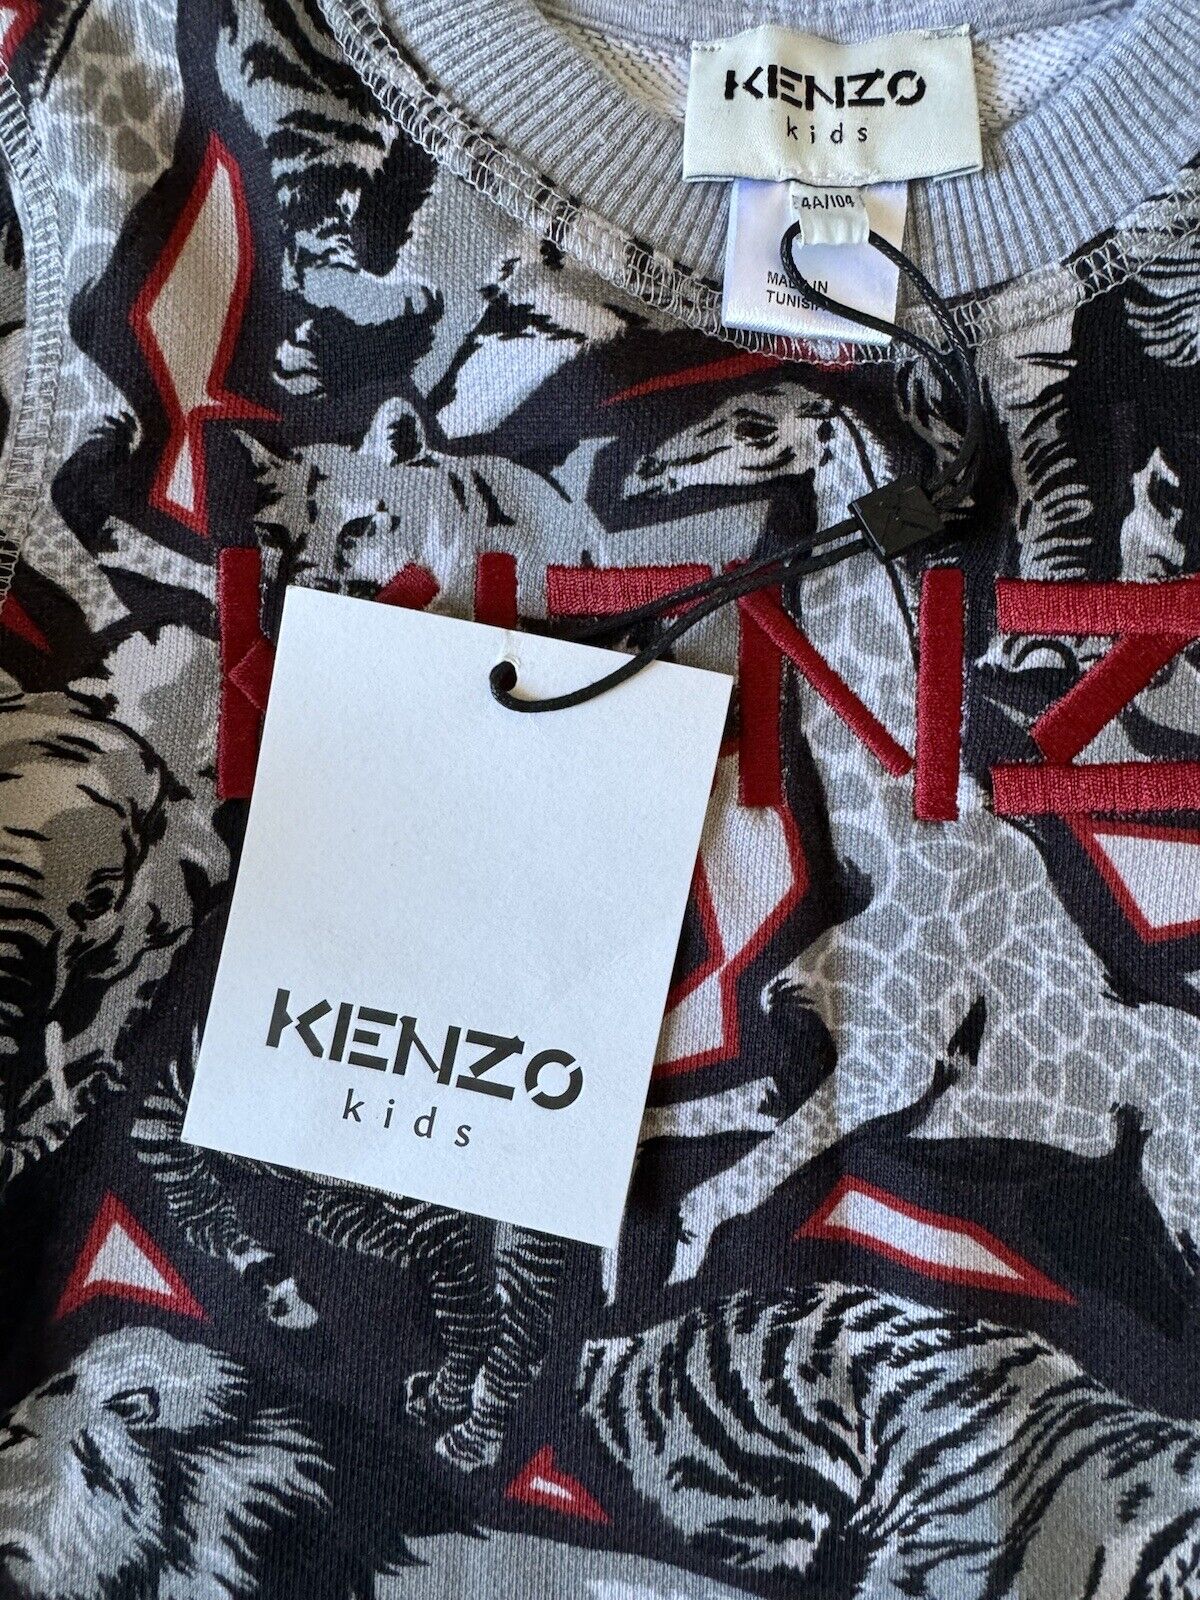 NWT Kenzo Animal Print Boys Cotton Sweater Size 4T